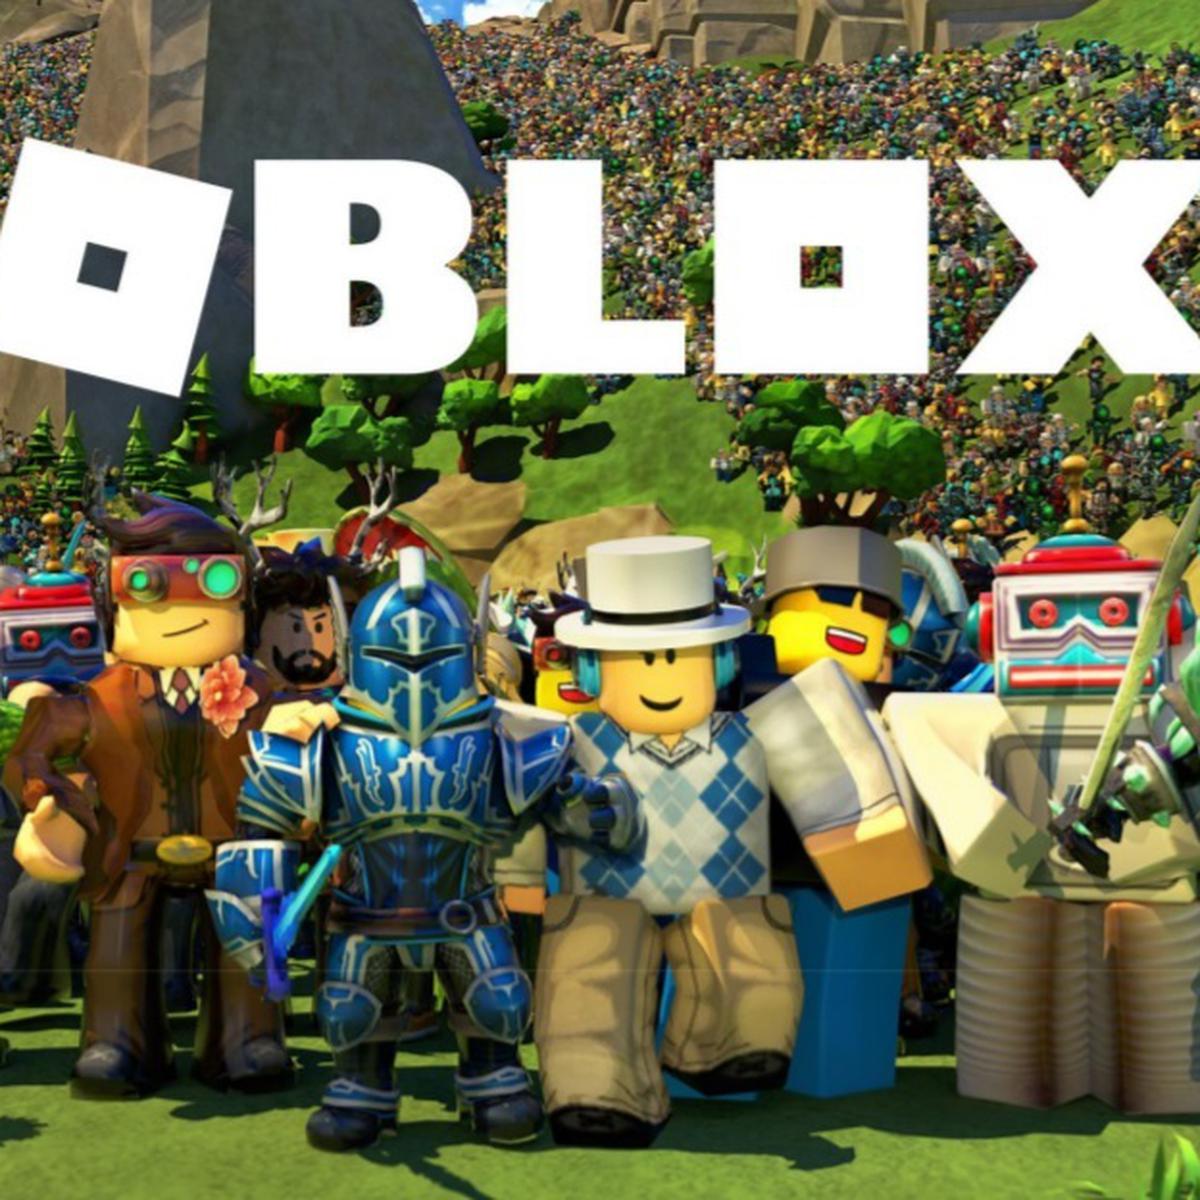 Roblox restringirá contenido para 'mayores de 17 años' a desarrolladores